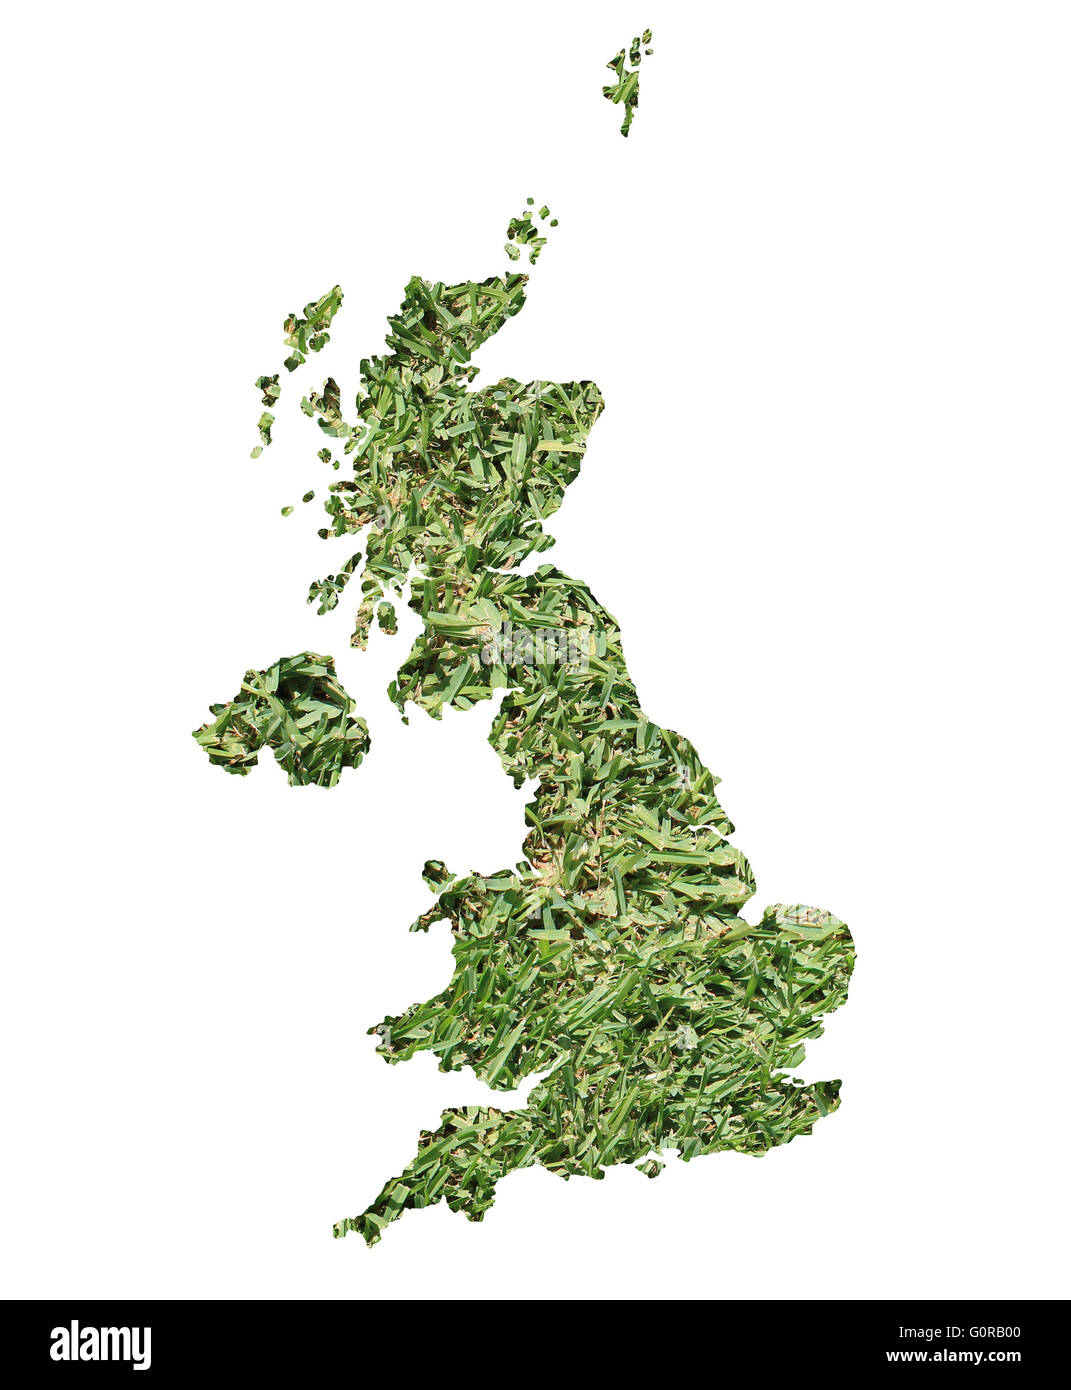 Karte des Vereinigten Königreichs gefüllt mit grünen Rasen, Umwelt und Ökologie-Konzept. Stockfoto